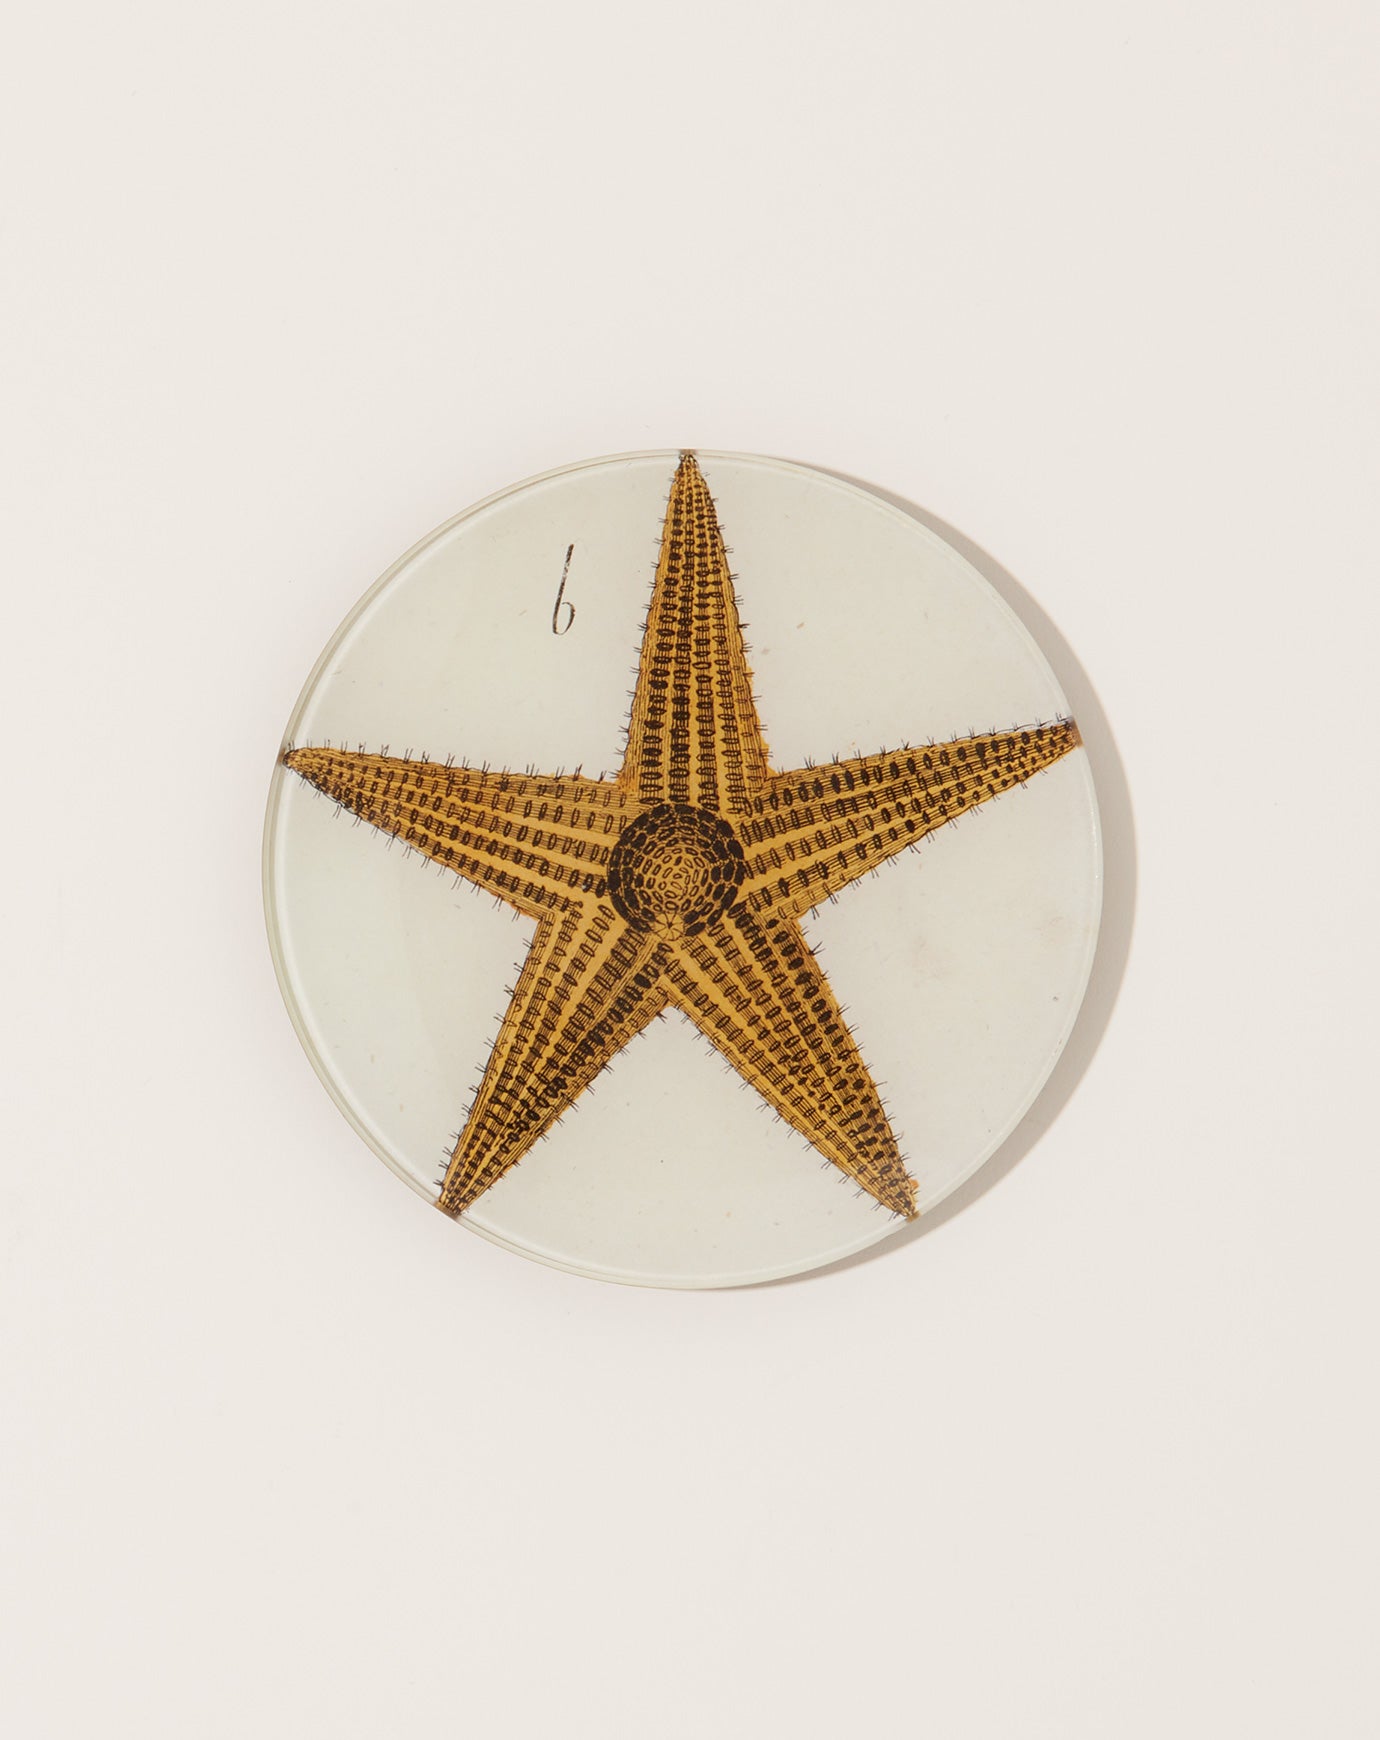 John Derian Starfish 5 1/4" Round